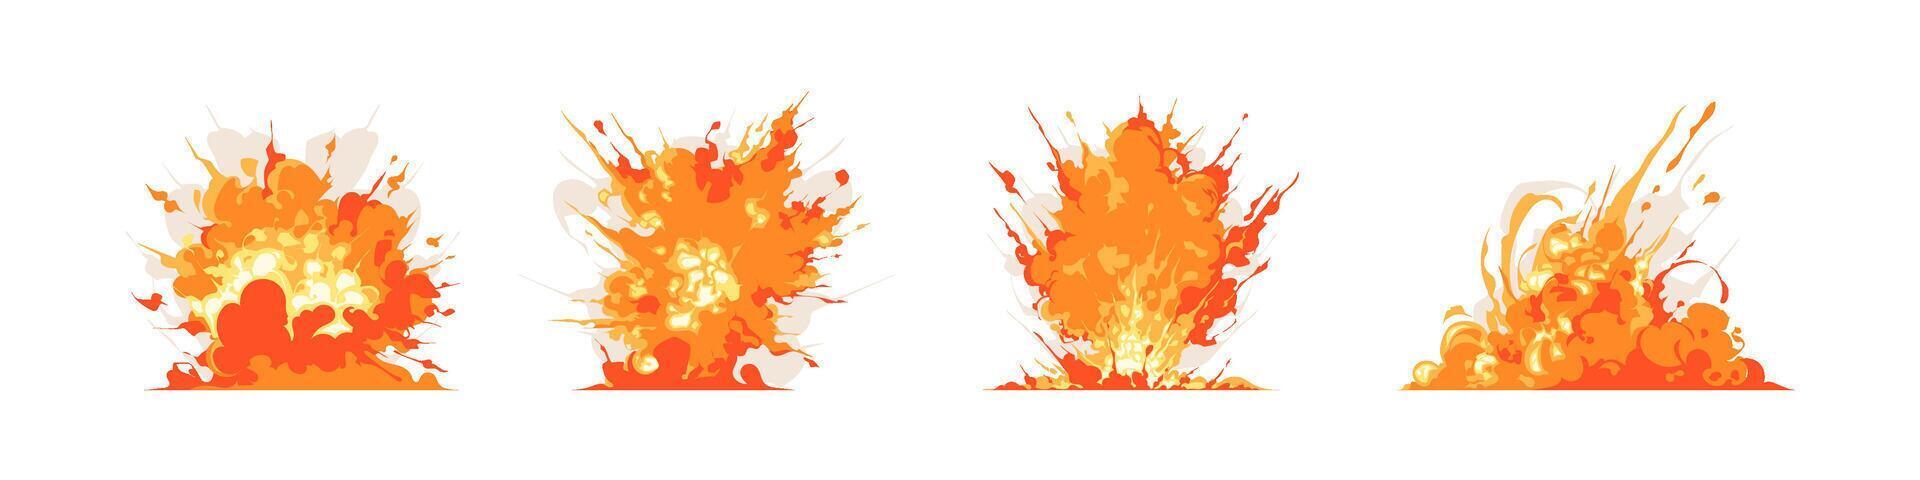 reeks van brandend brand en explosie, snel Actie spoor, spatten, en rook grappig spel effect illustratie vector